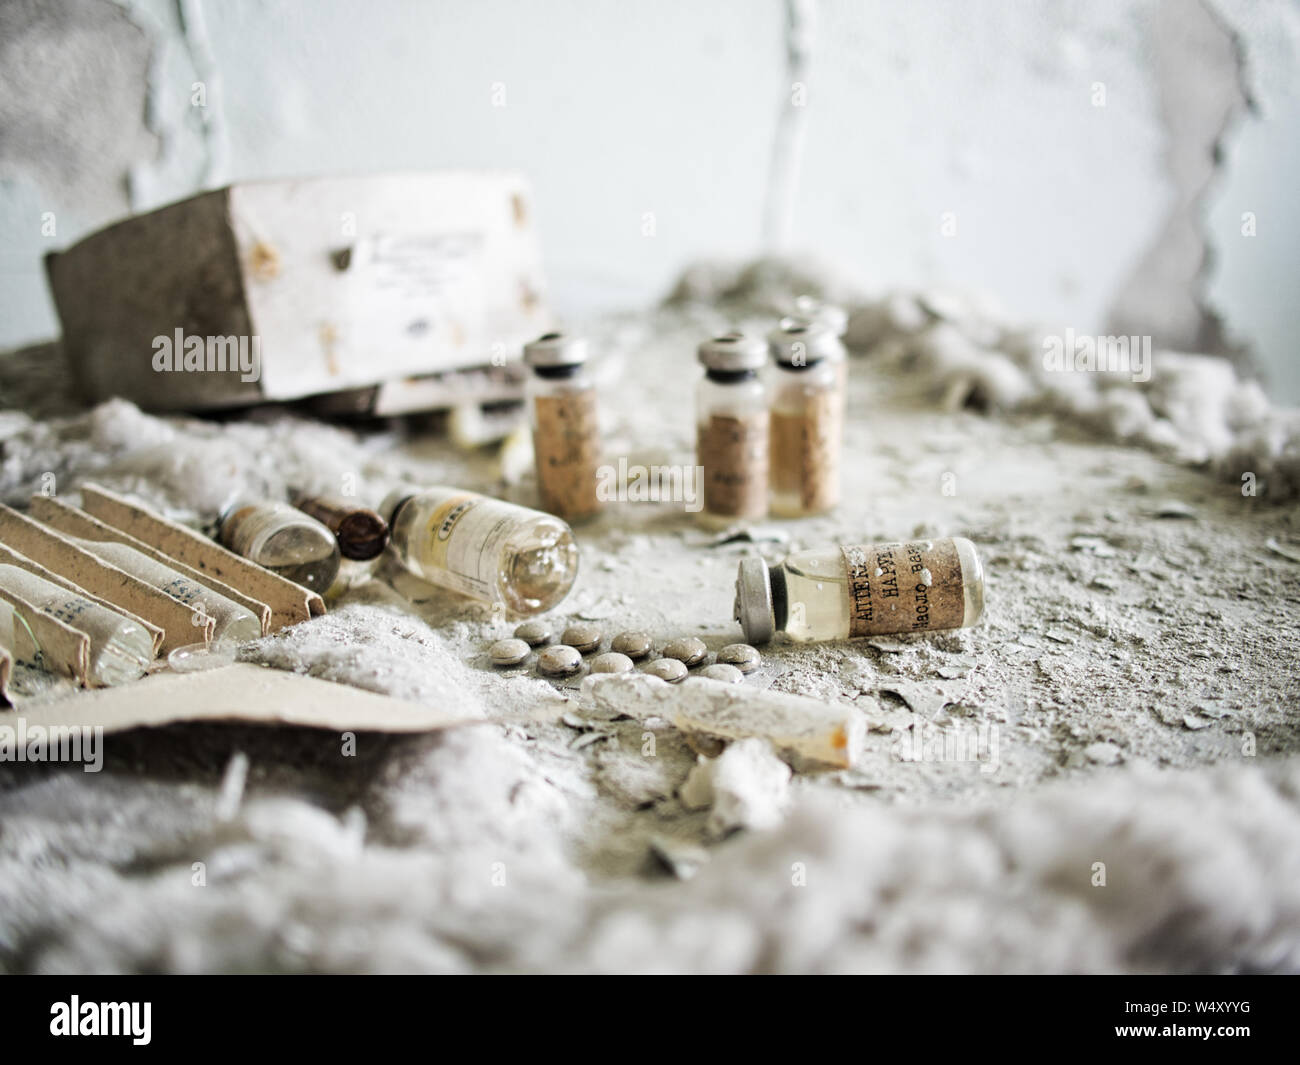 Gefunden Arzneimittel in Tschernobyl. Stockfoto